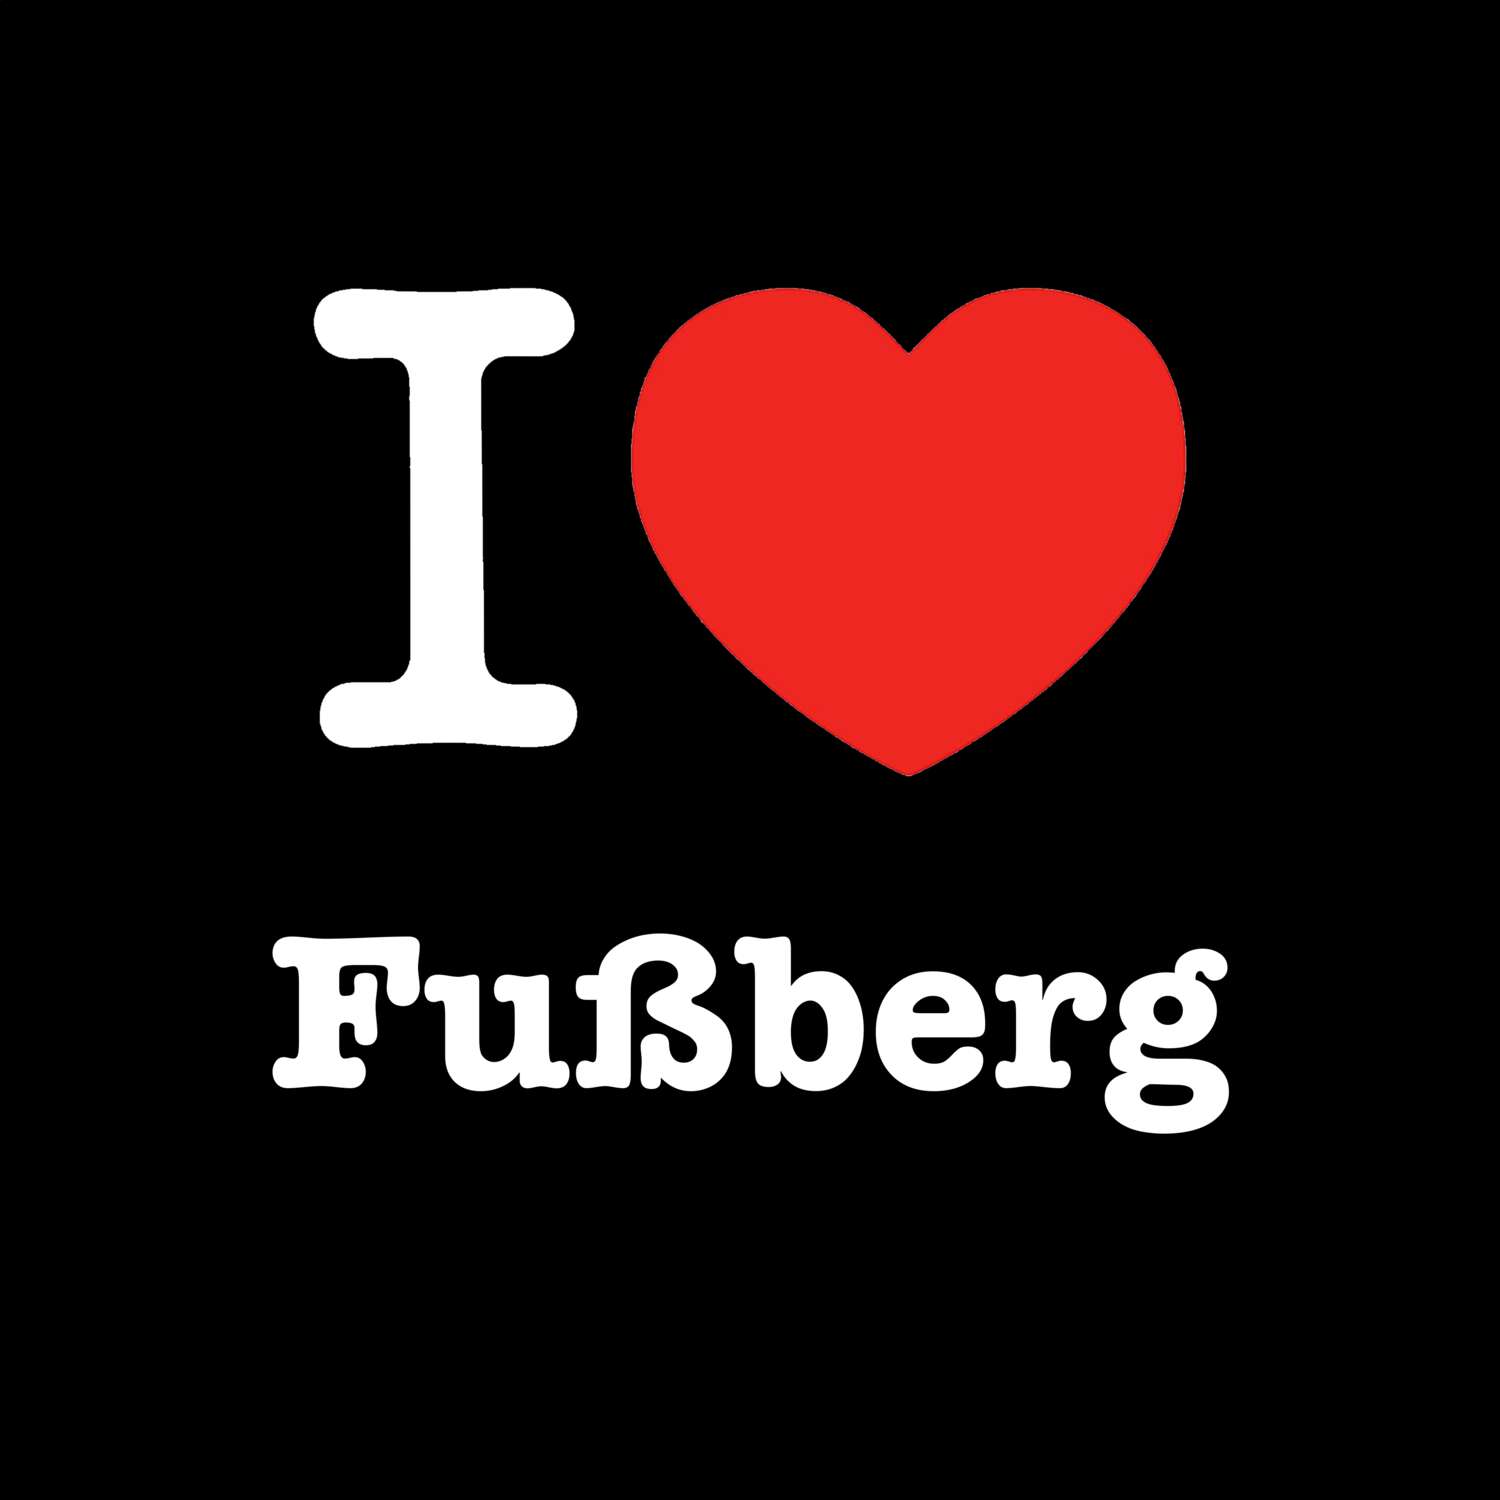 Fußberg T-Shirt »I love«